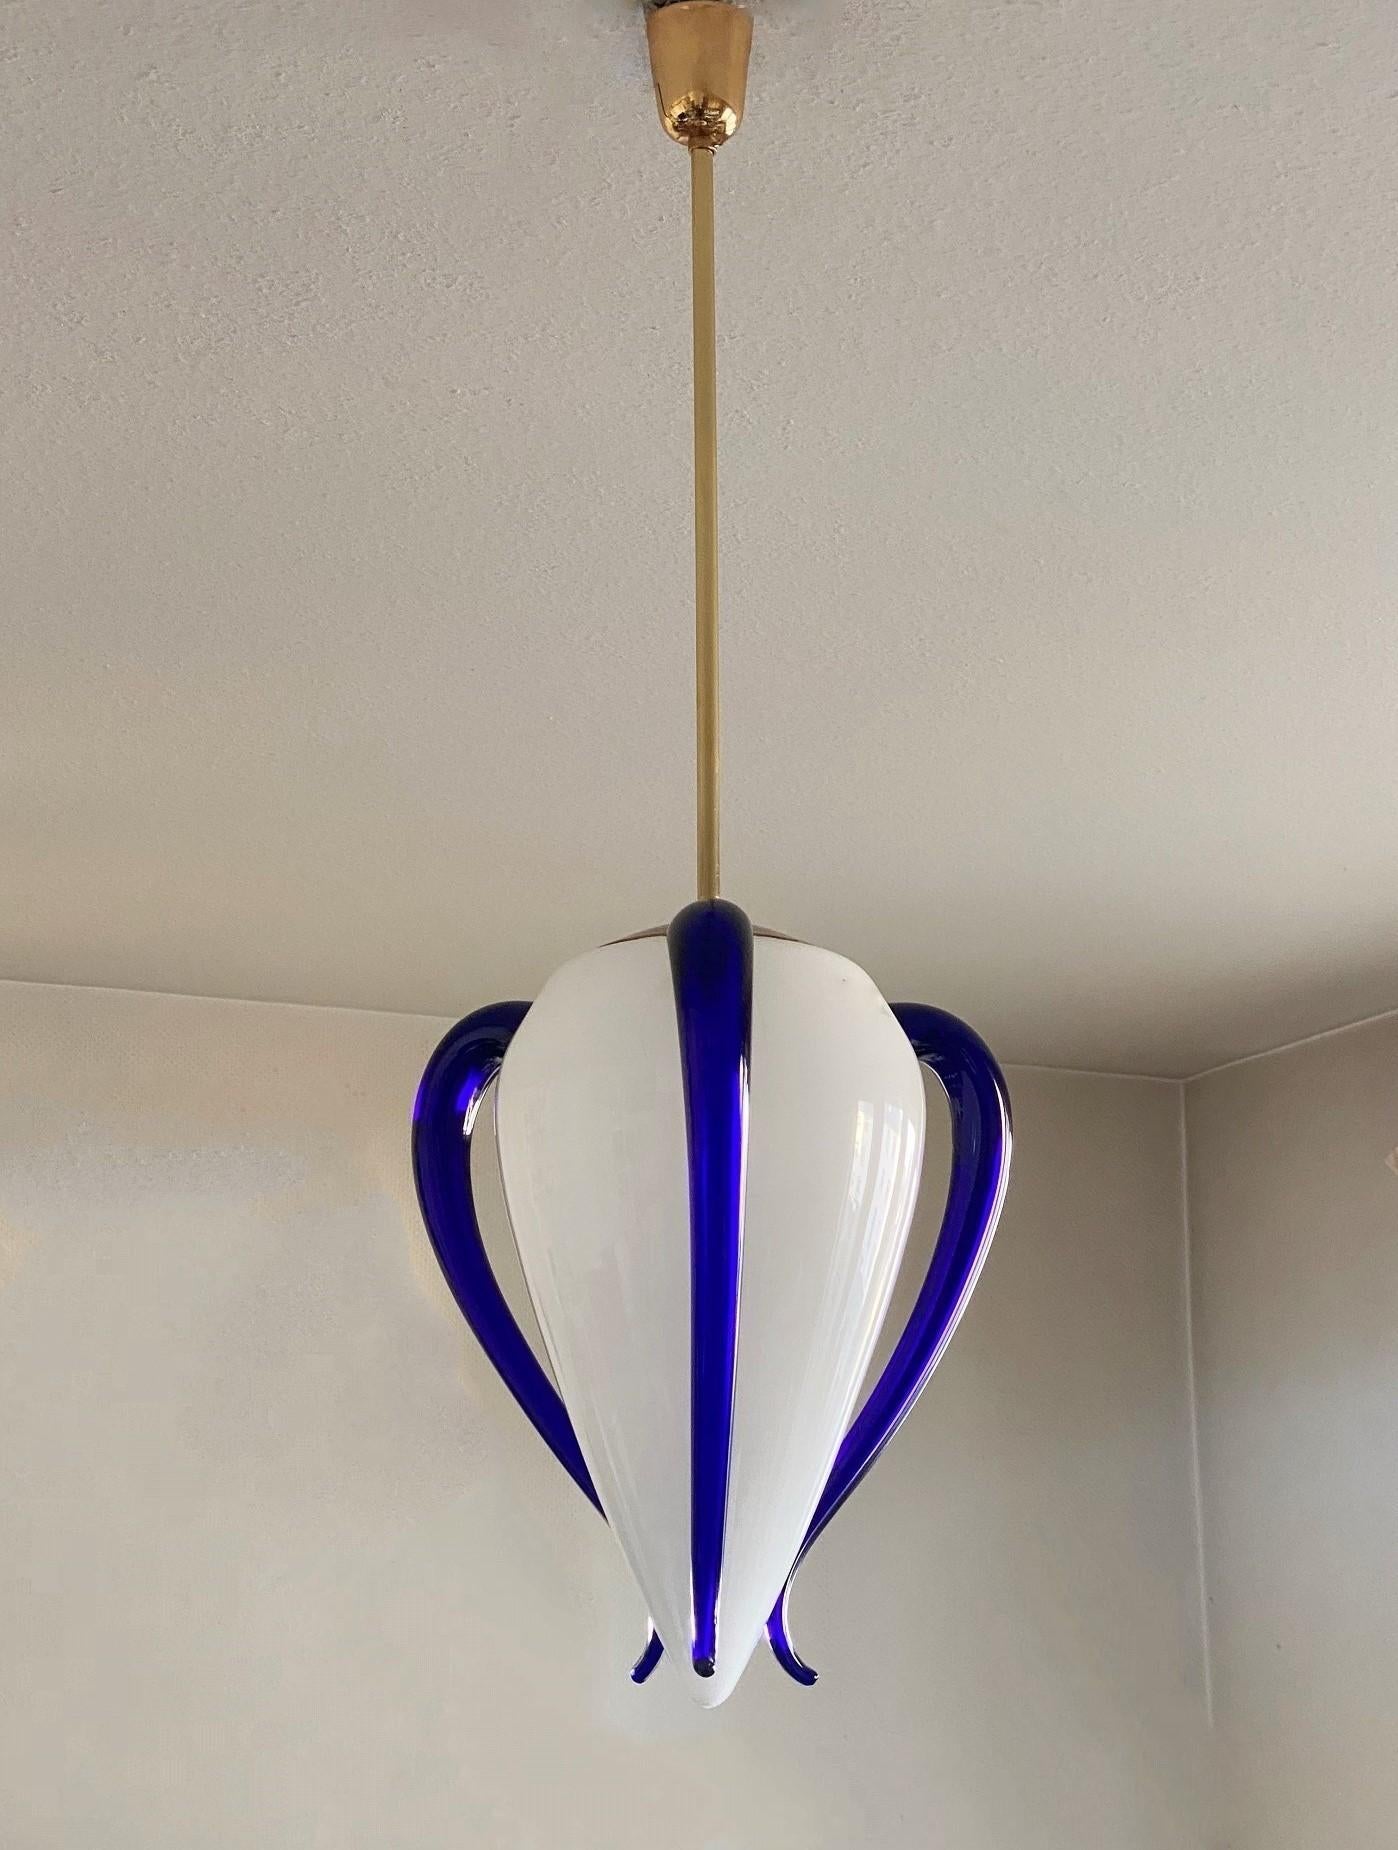 Ein seltener Anhänger aus mundgeblasenem Murano-Glas von der renommierten Glasmanufaktur Barovier & Toso, Italien, 1991. Die drei verstellbaren königsblauen seitlichen Elemente verleihen dem Anhänger ein sehr elegantes und einzigartiges Design.